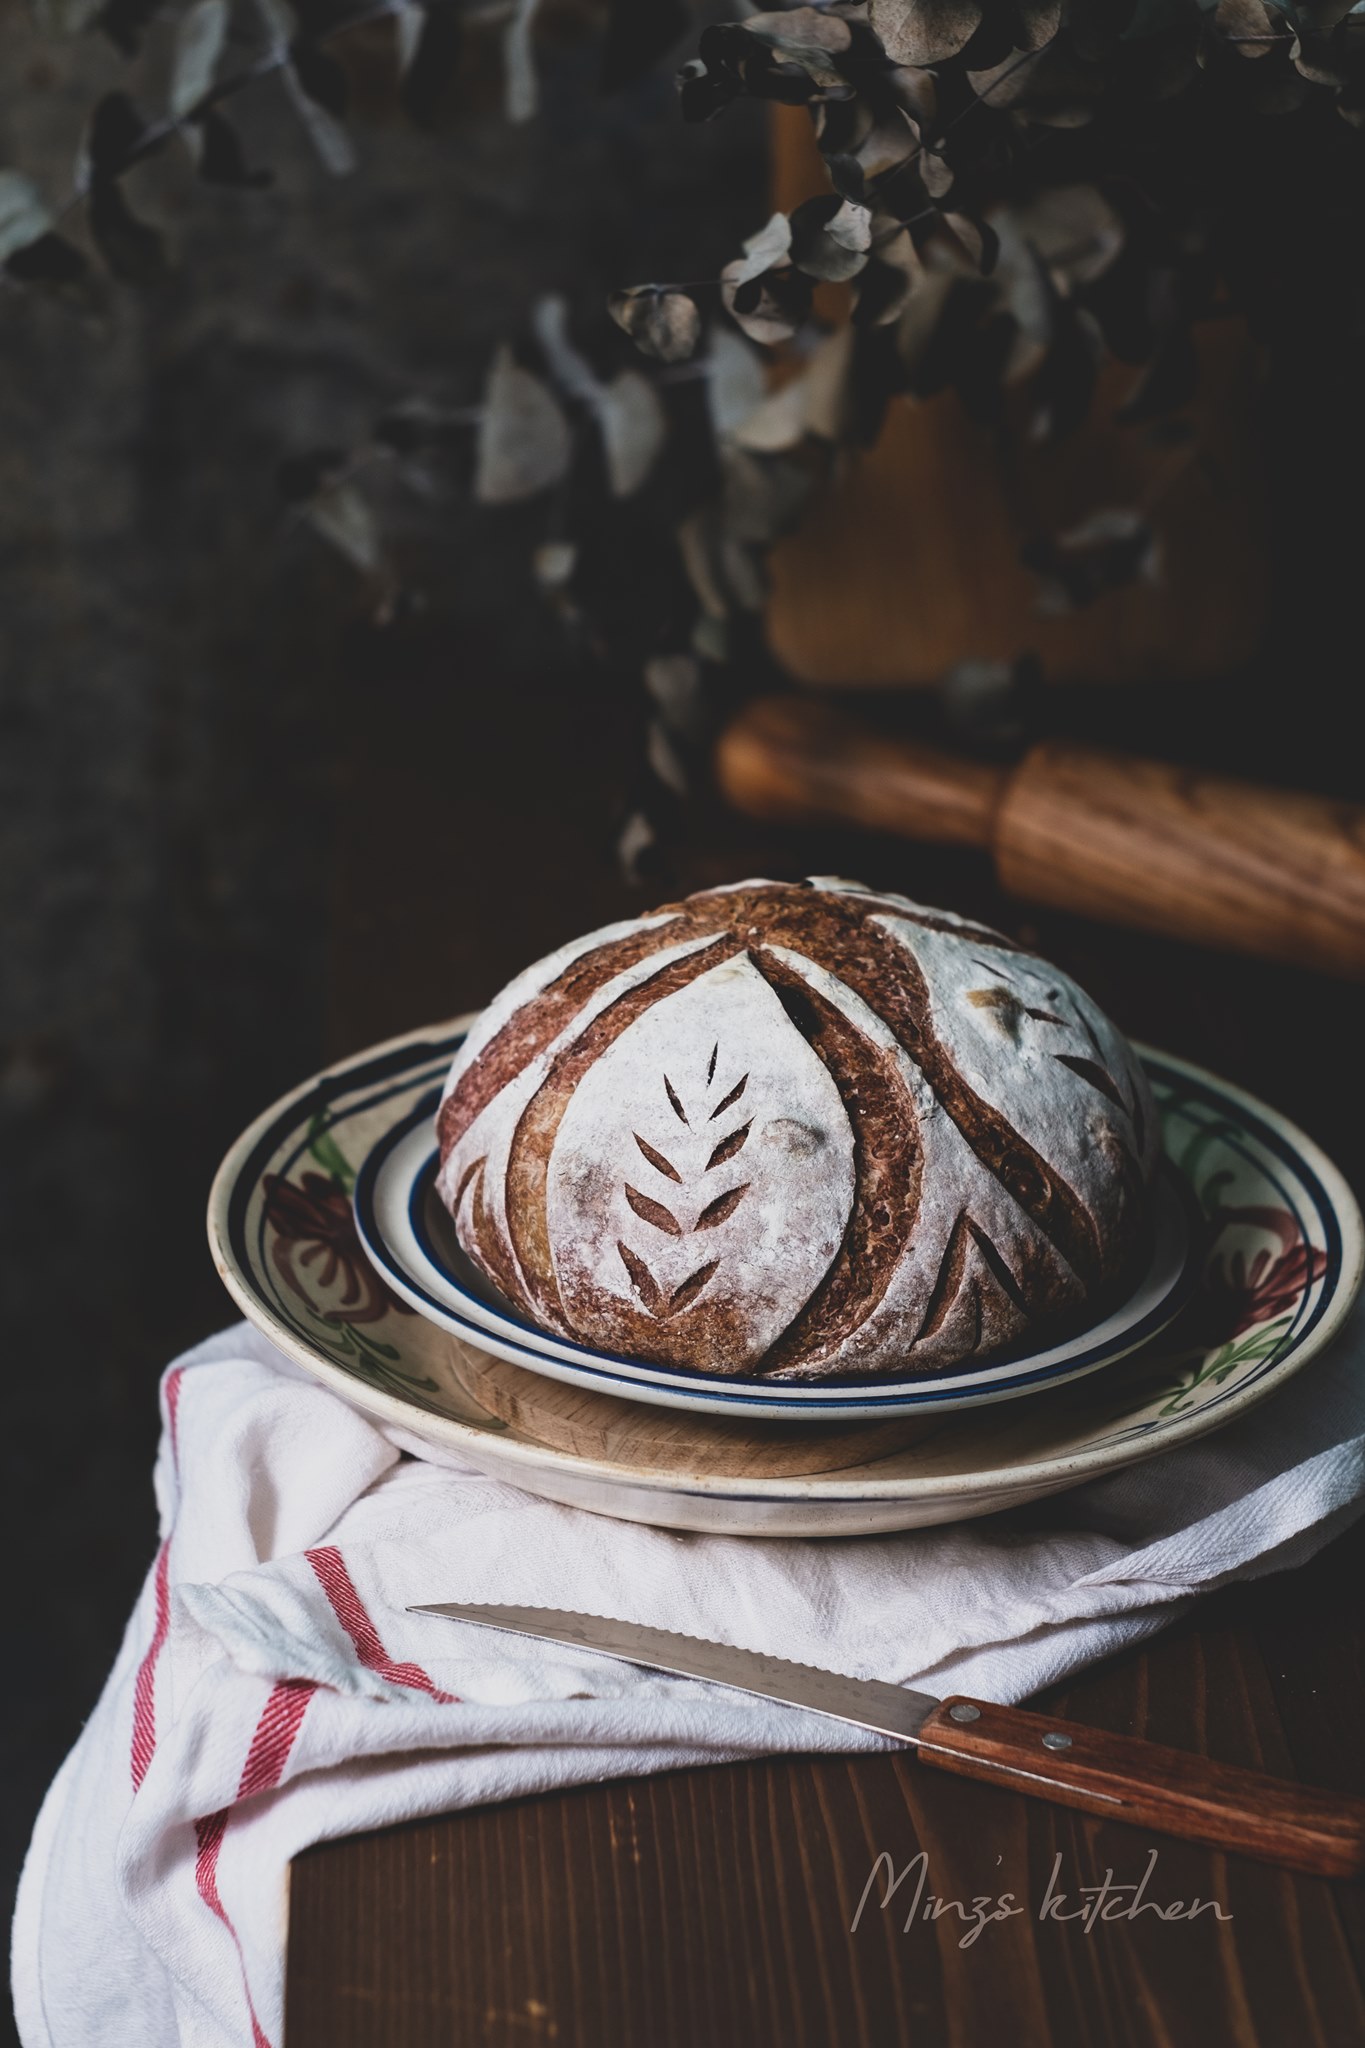 banh mi khoai lang tim1 - Cách làm bánh mì khoai lang tím thơm ngon, hấp dẫn cực đơn giản